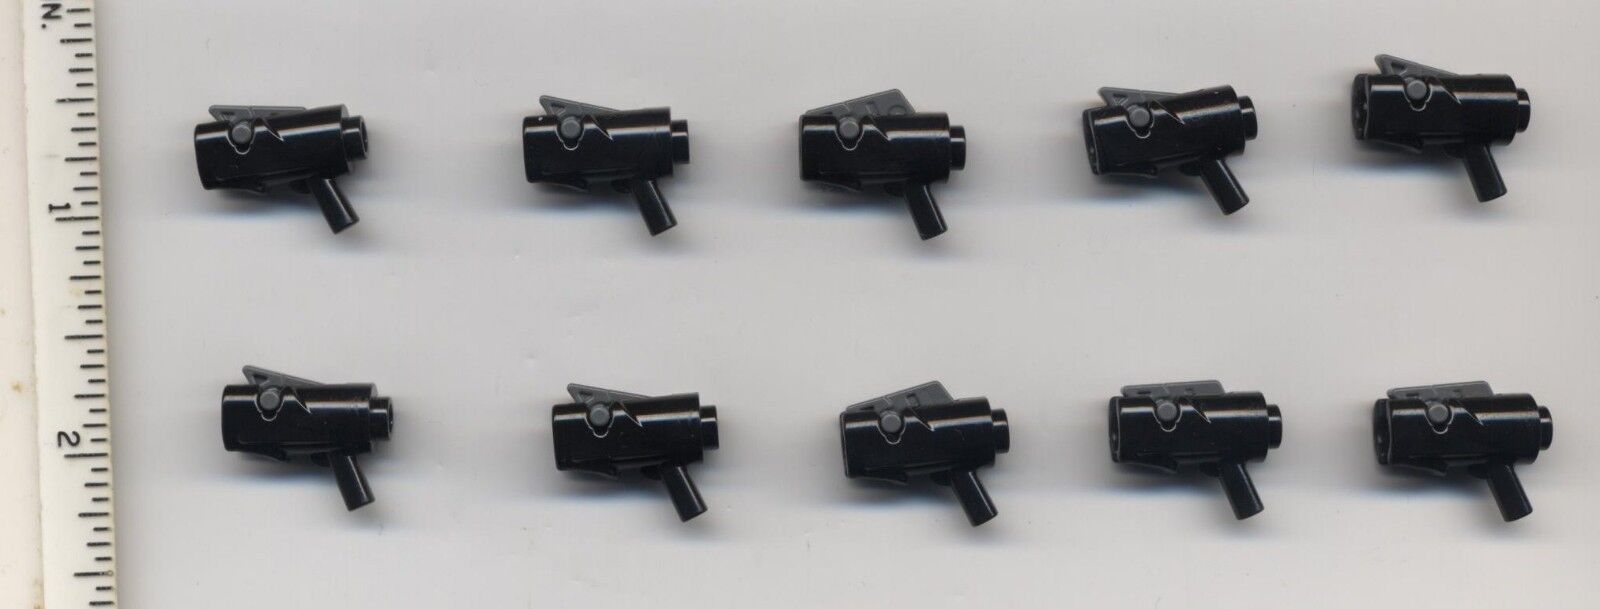 Star Wars LEGO x 10 Black Minifig, Weapon Gun, Blaster Mini Trigger 75035